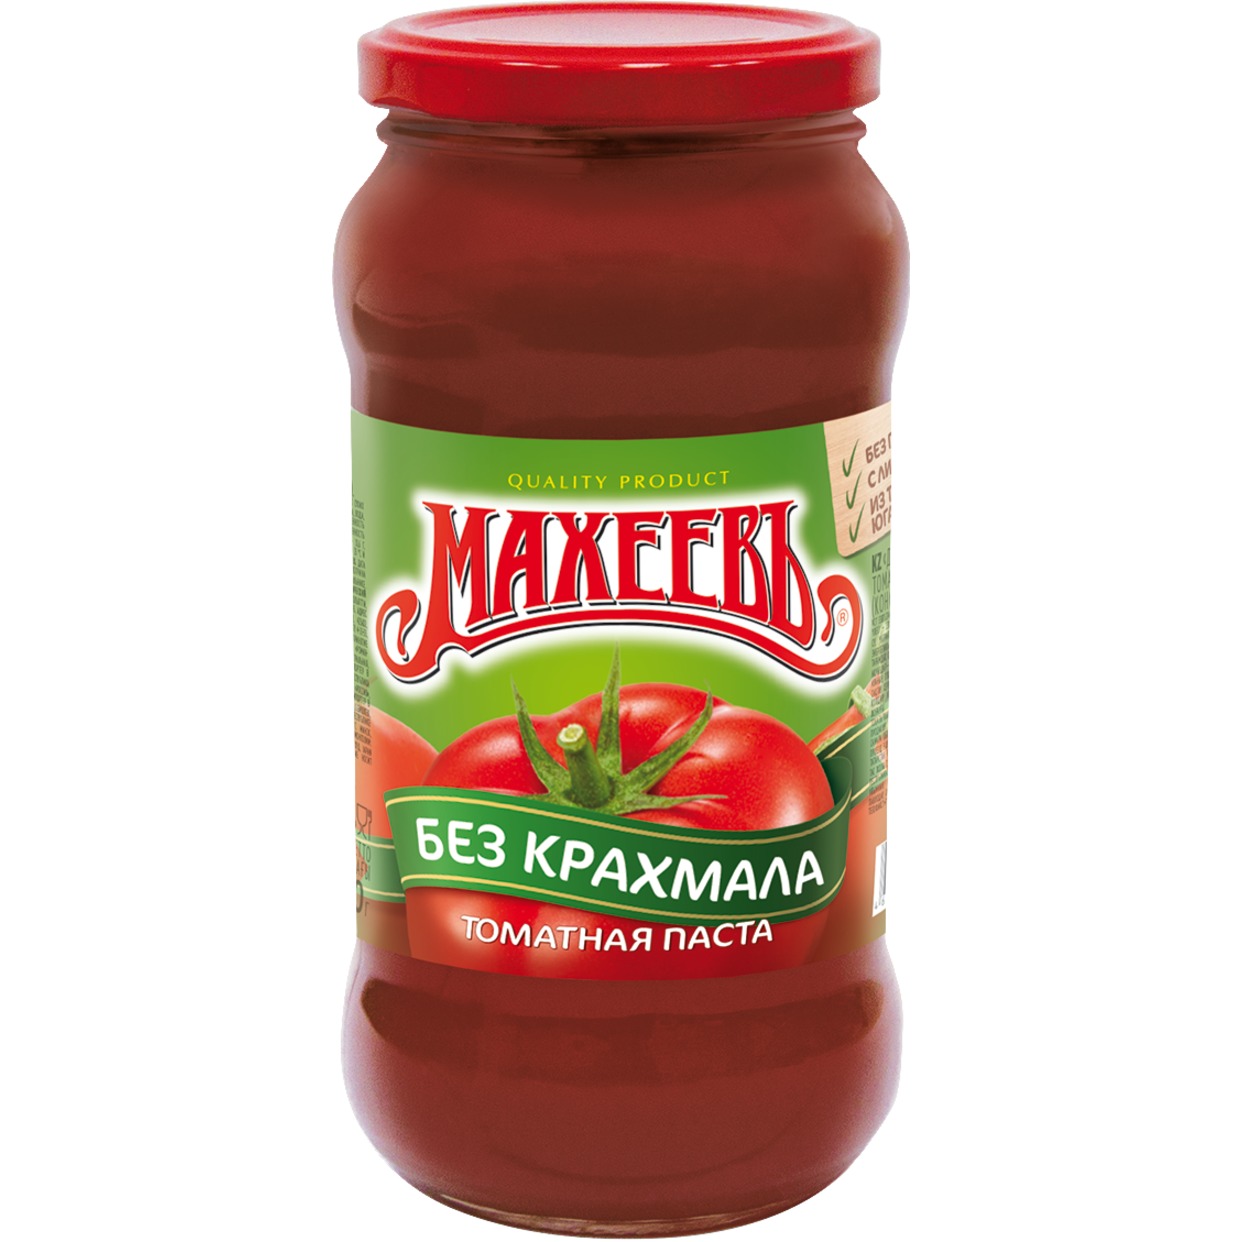 Паста томатная Махеевъ, 500 г по акции в Пятерочке